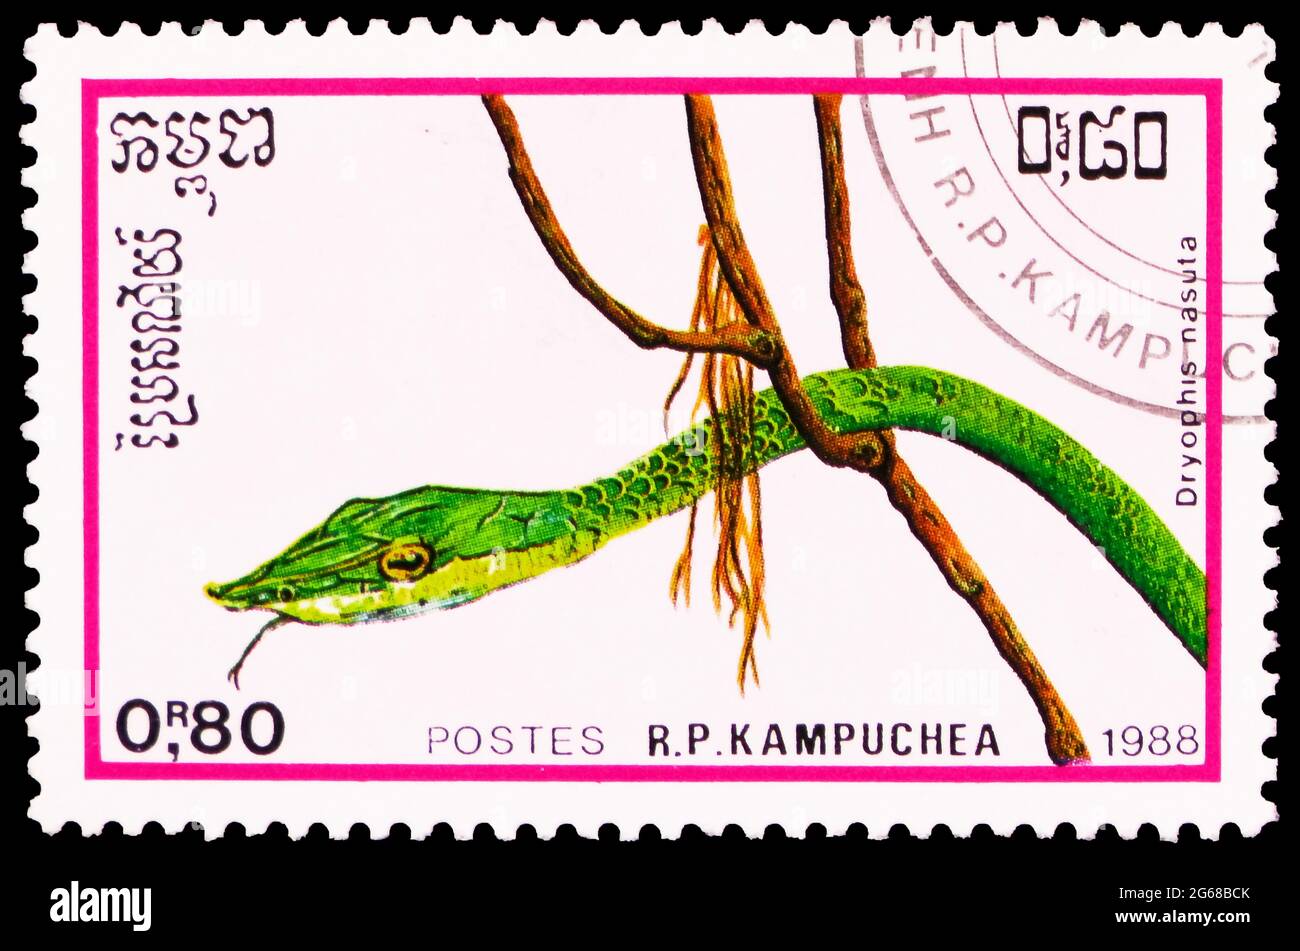 MOSCOU, RUSSIE - 29 MARS 2020: Timbre-poste imprimé à Kampuchea (Cambodge) montre le serpent asiatique à vigne (Dryophis nasuta), série de reptiles, vers 1988 Banque D'Images